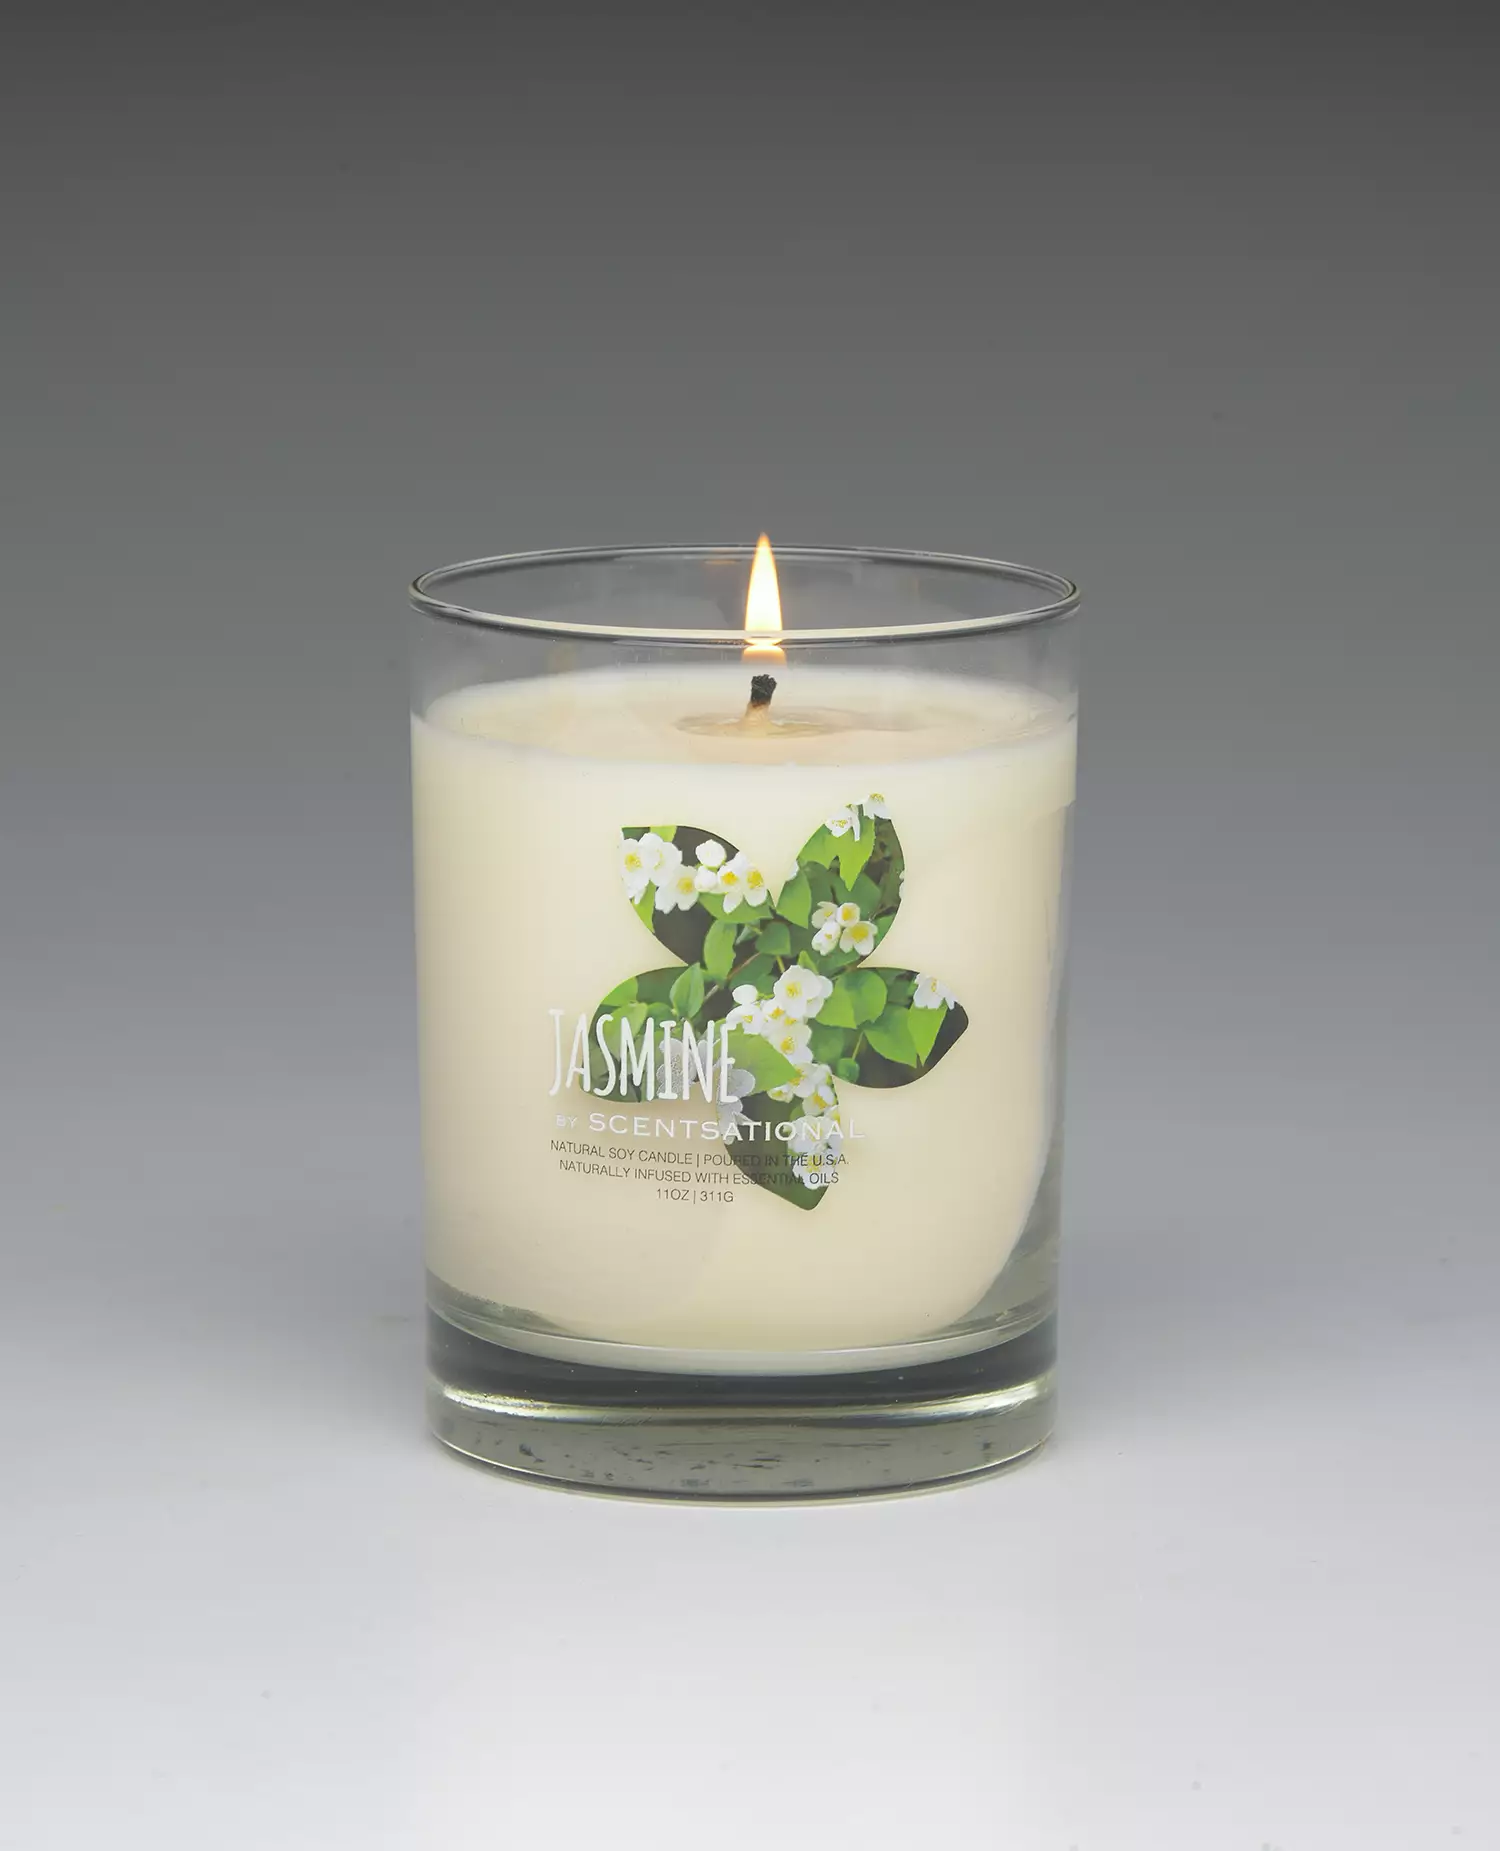 Jasmine – 11oz scented candle burning